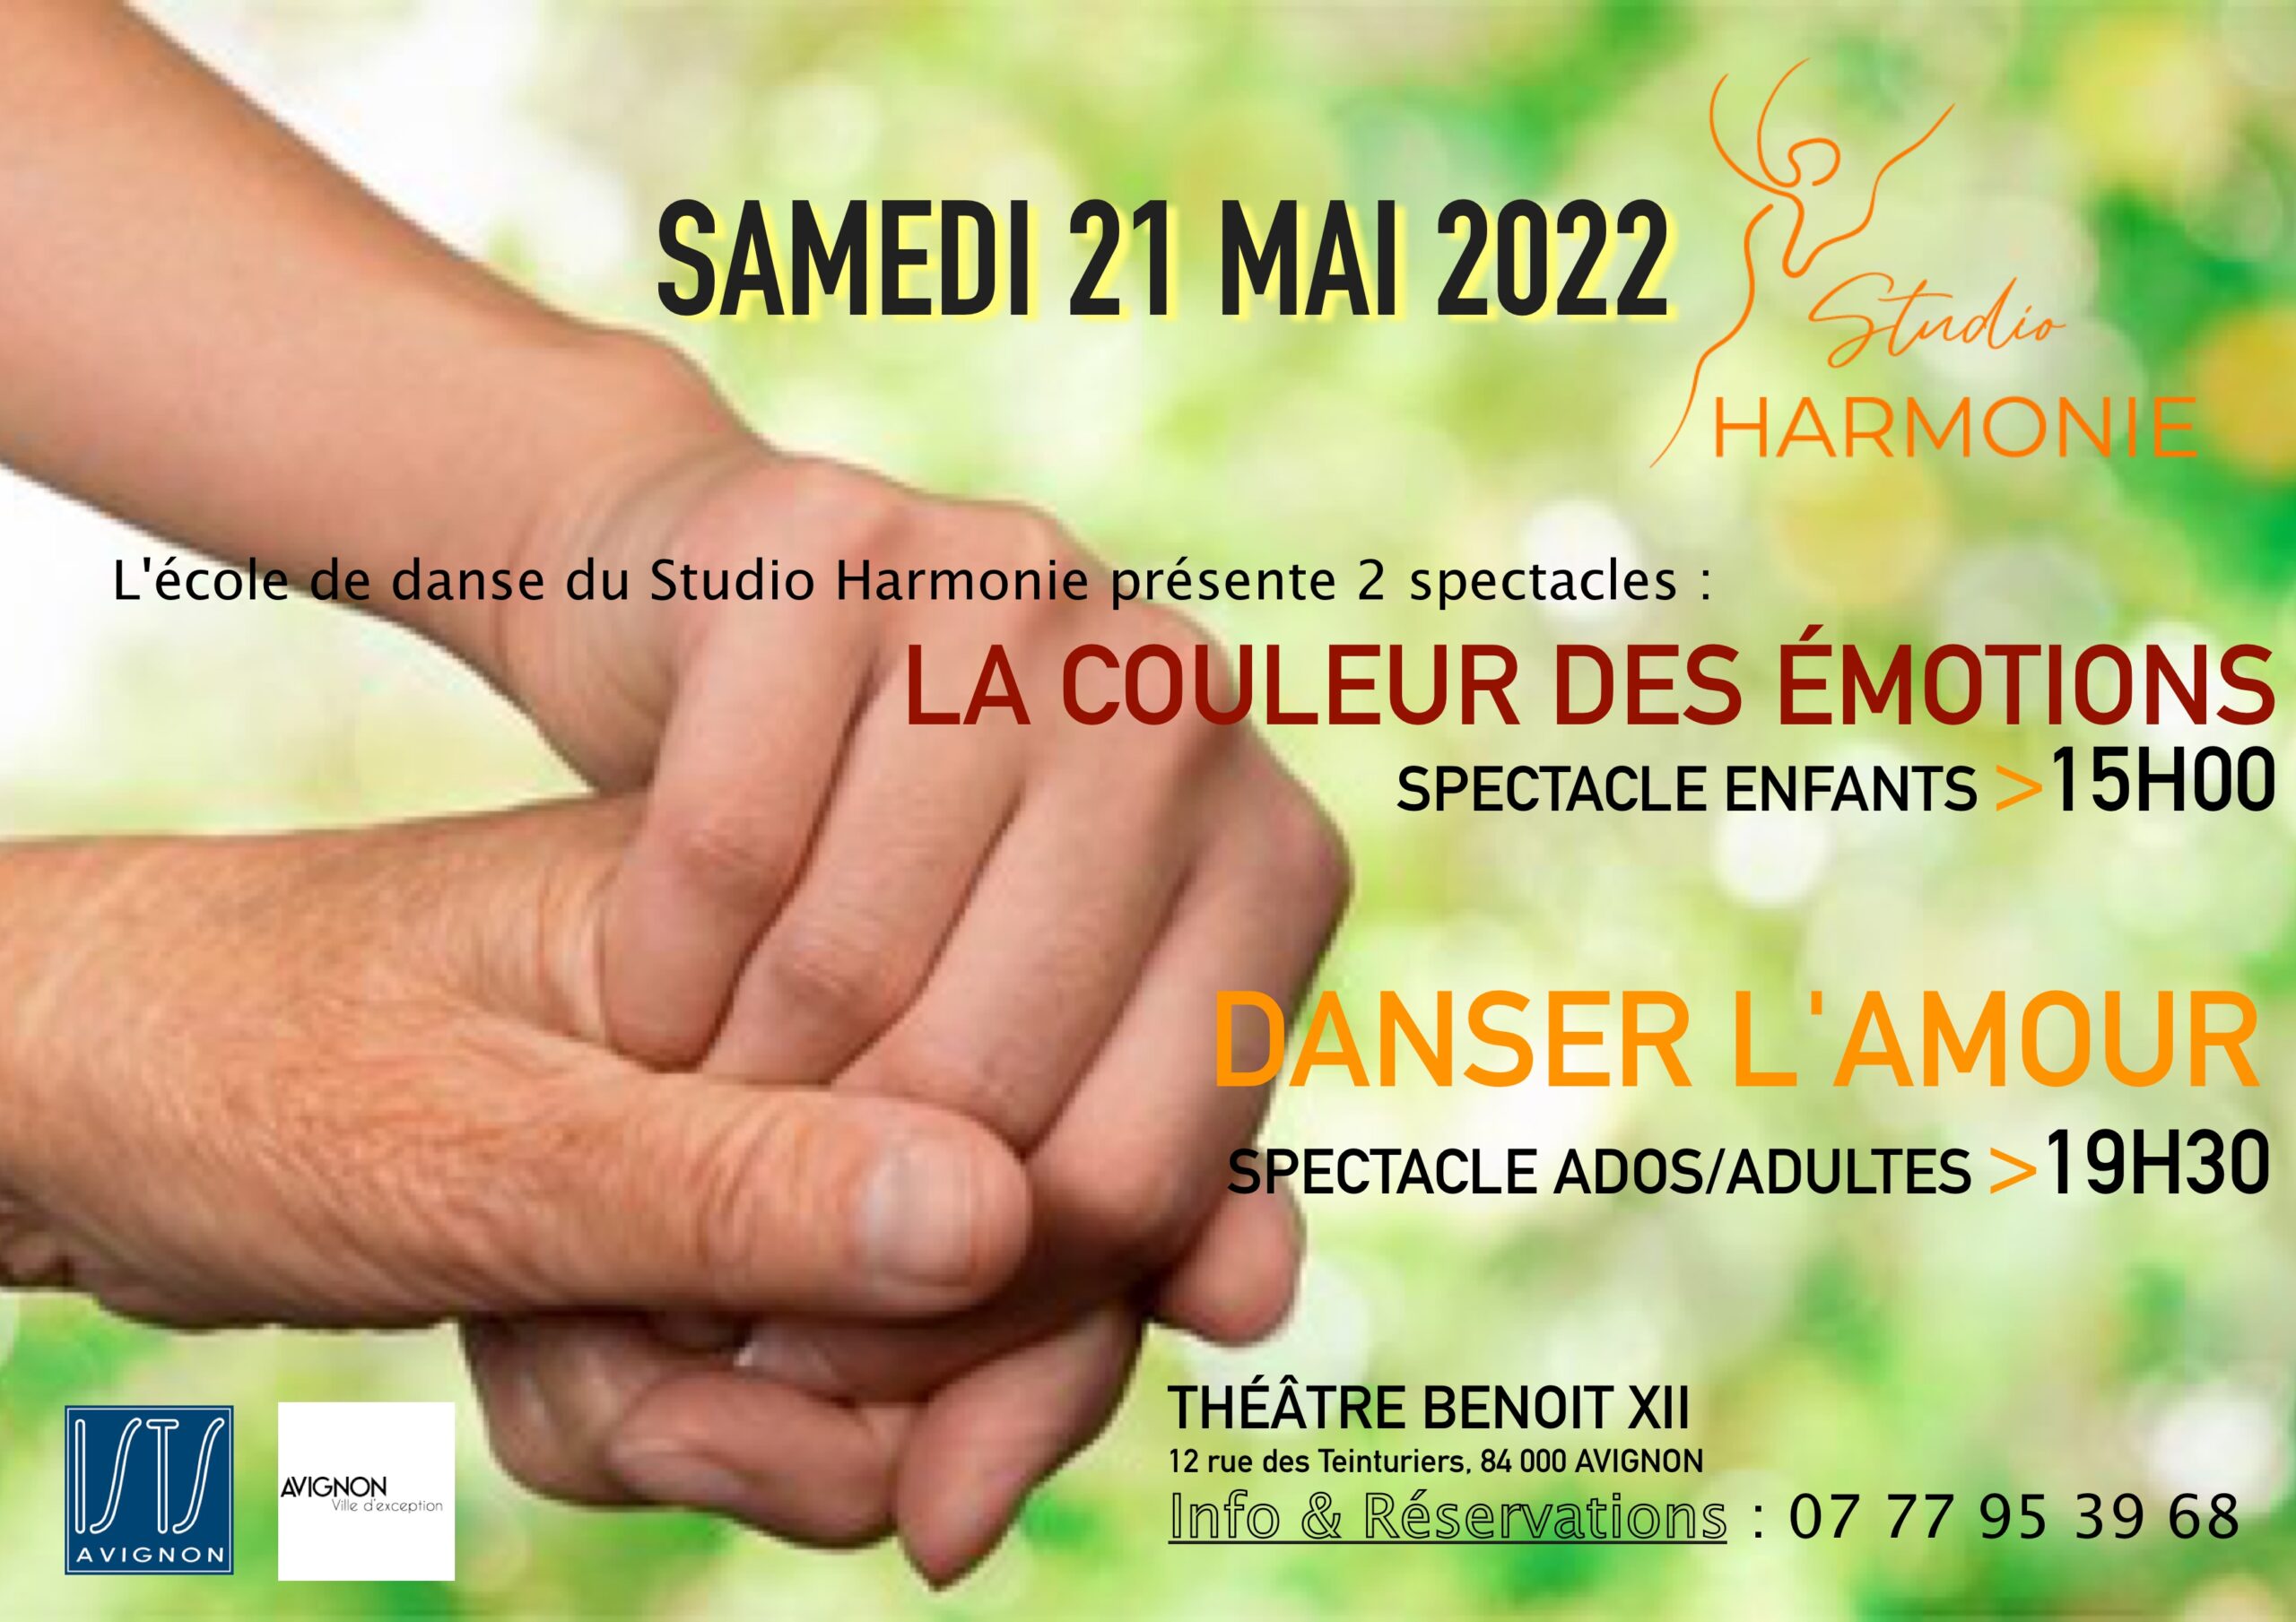 Le Théâtre Benoît XII accueille l’école de danse Studio Harmonie pour les spectacles « La couleur des émotions » et « Danser l’amour » le 21 mai 2022 à 15h et 19h30